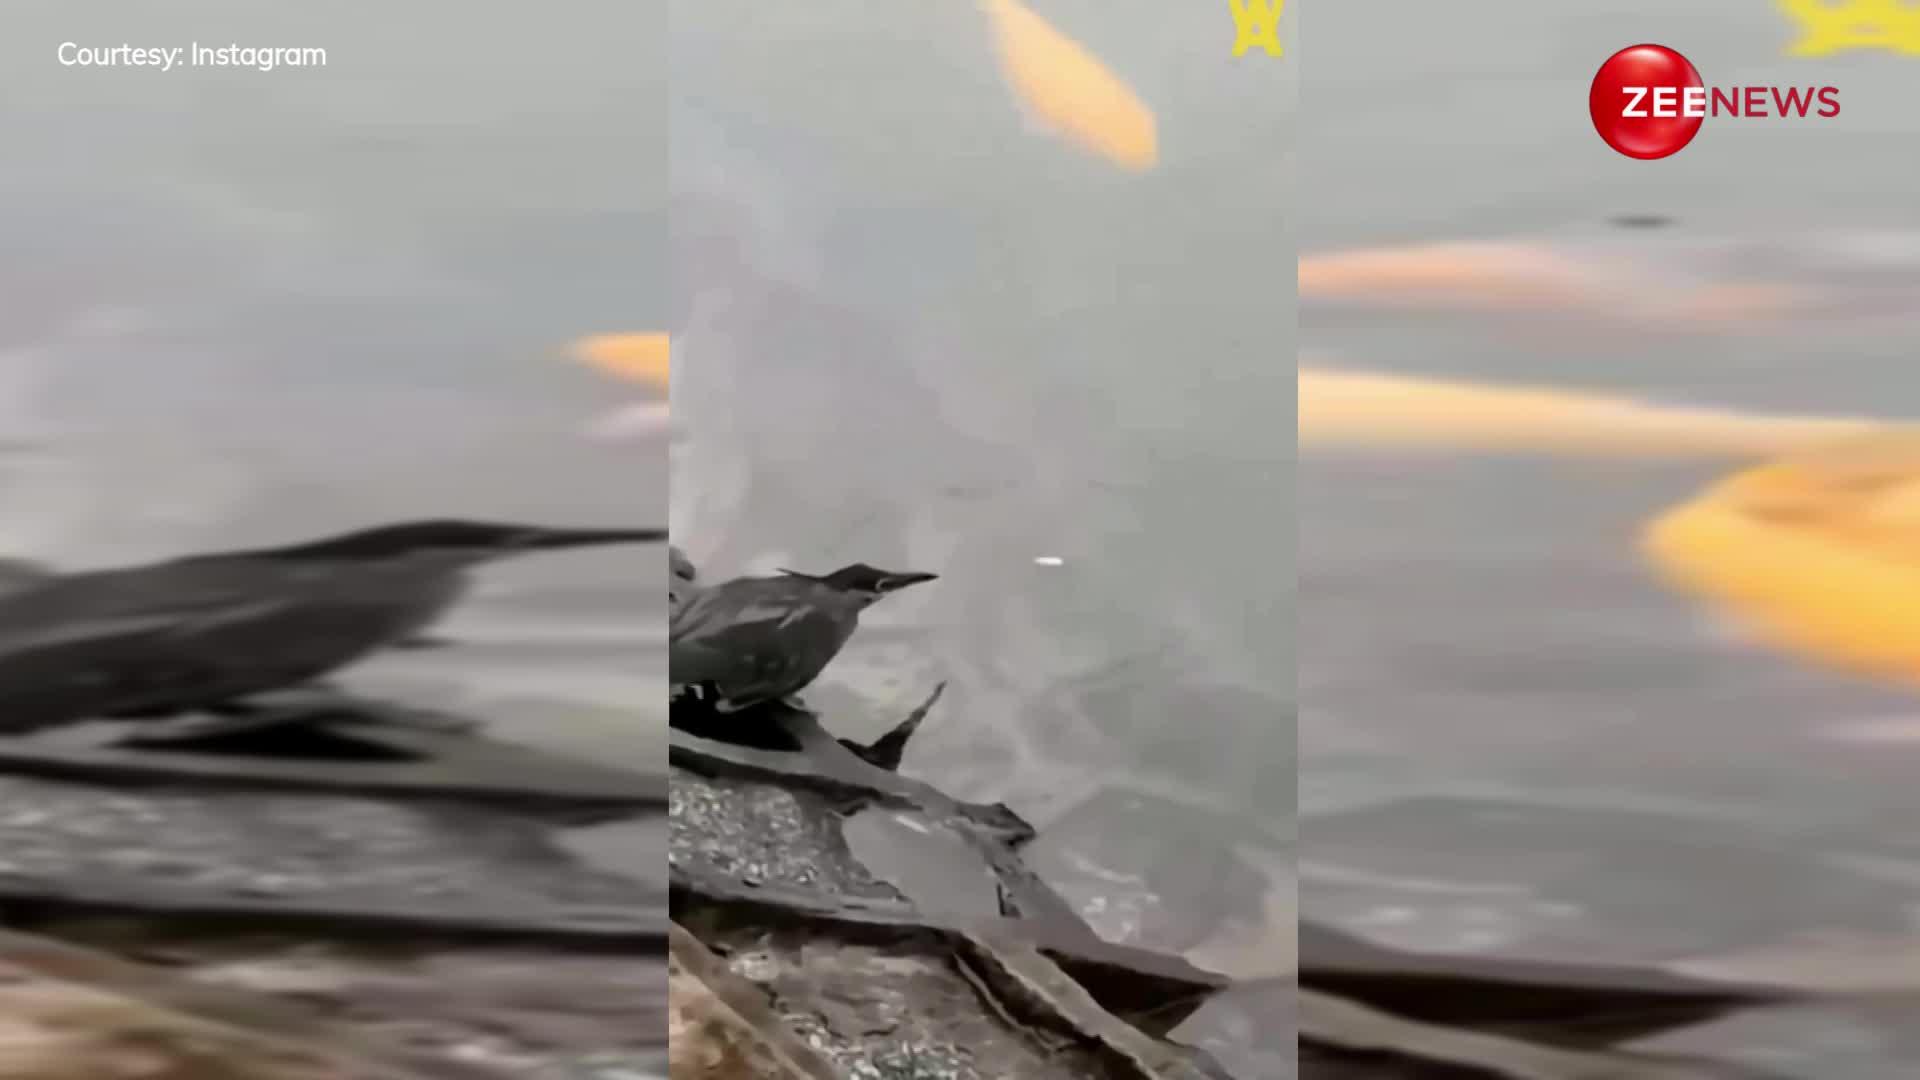 Bird Video: चिड़िया ने इस तरह से मछली को डाला दाना, वीडियो हुआ हैरान